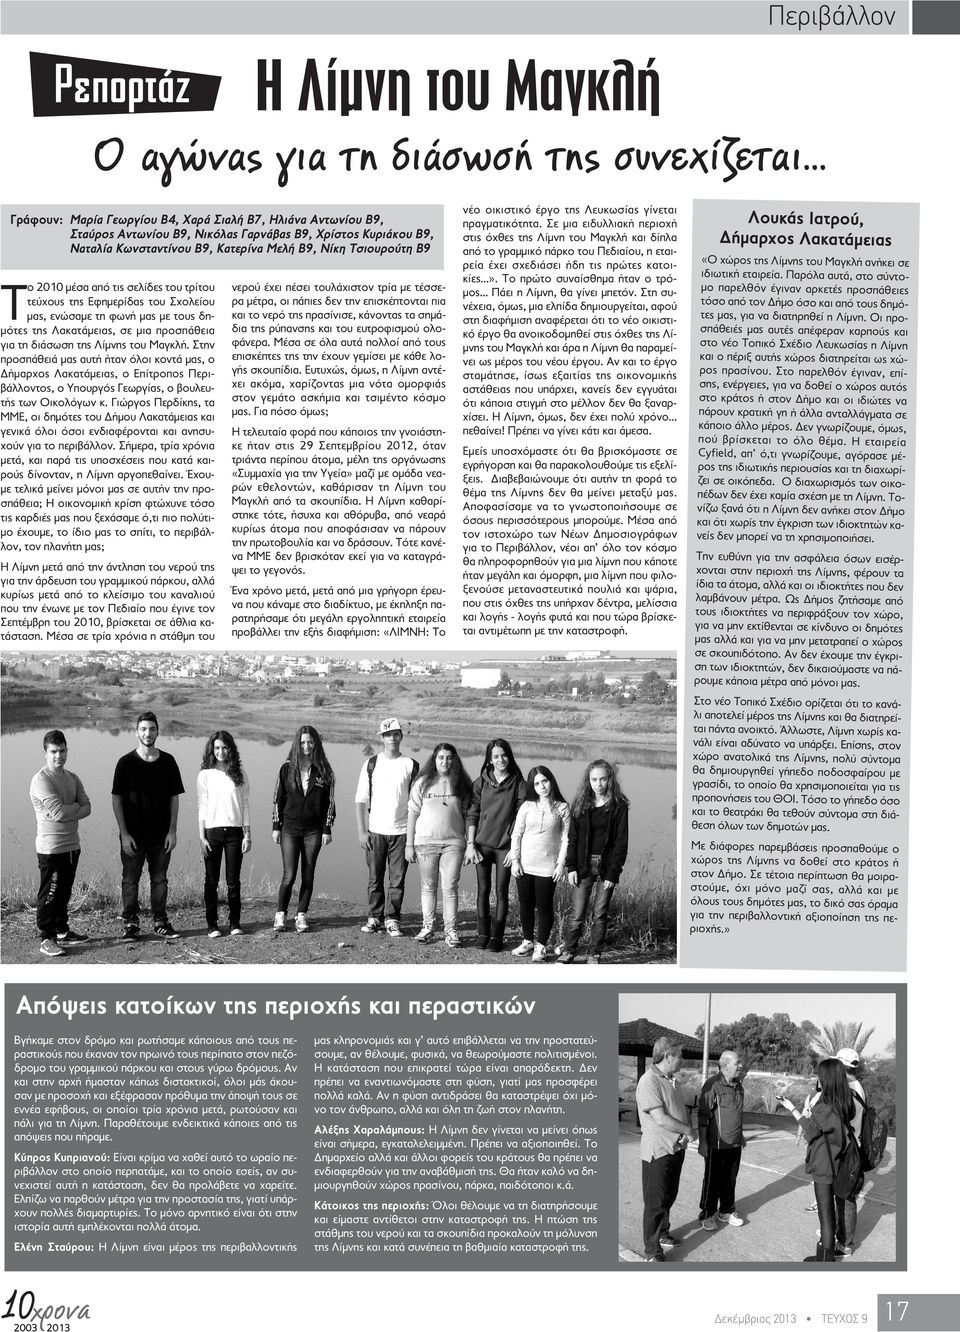 μέσα από τις σελίδες του τρίτου τεύχους της Εφημερίδας του Σχολείου μας, ενώσαμε τη φωνή μας με τους δημότες της Λακατάμειας, σε μια προσπάθεια για τη διάσωση της Λίμνης του Μαγκλή.